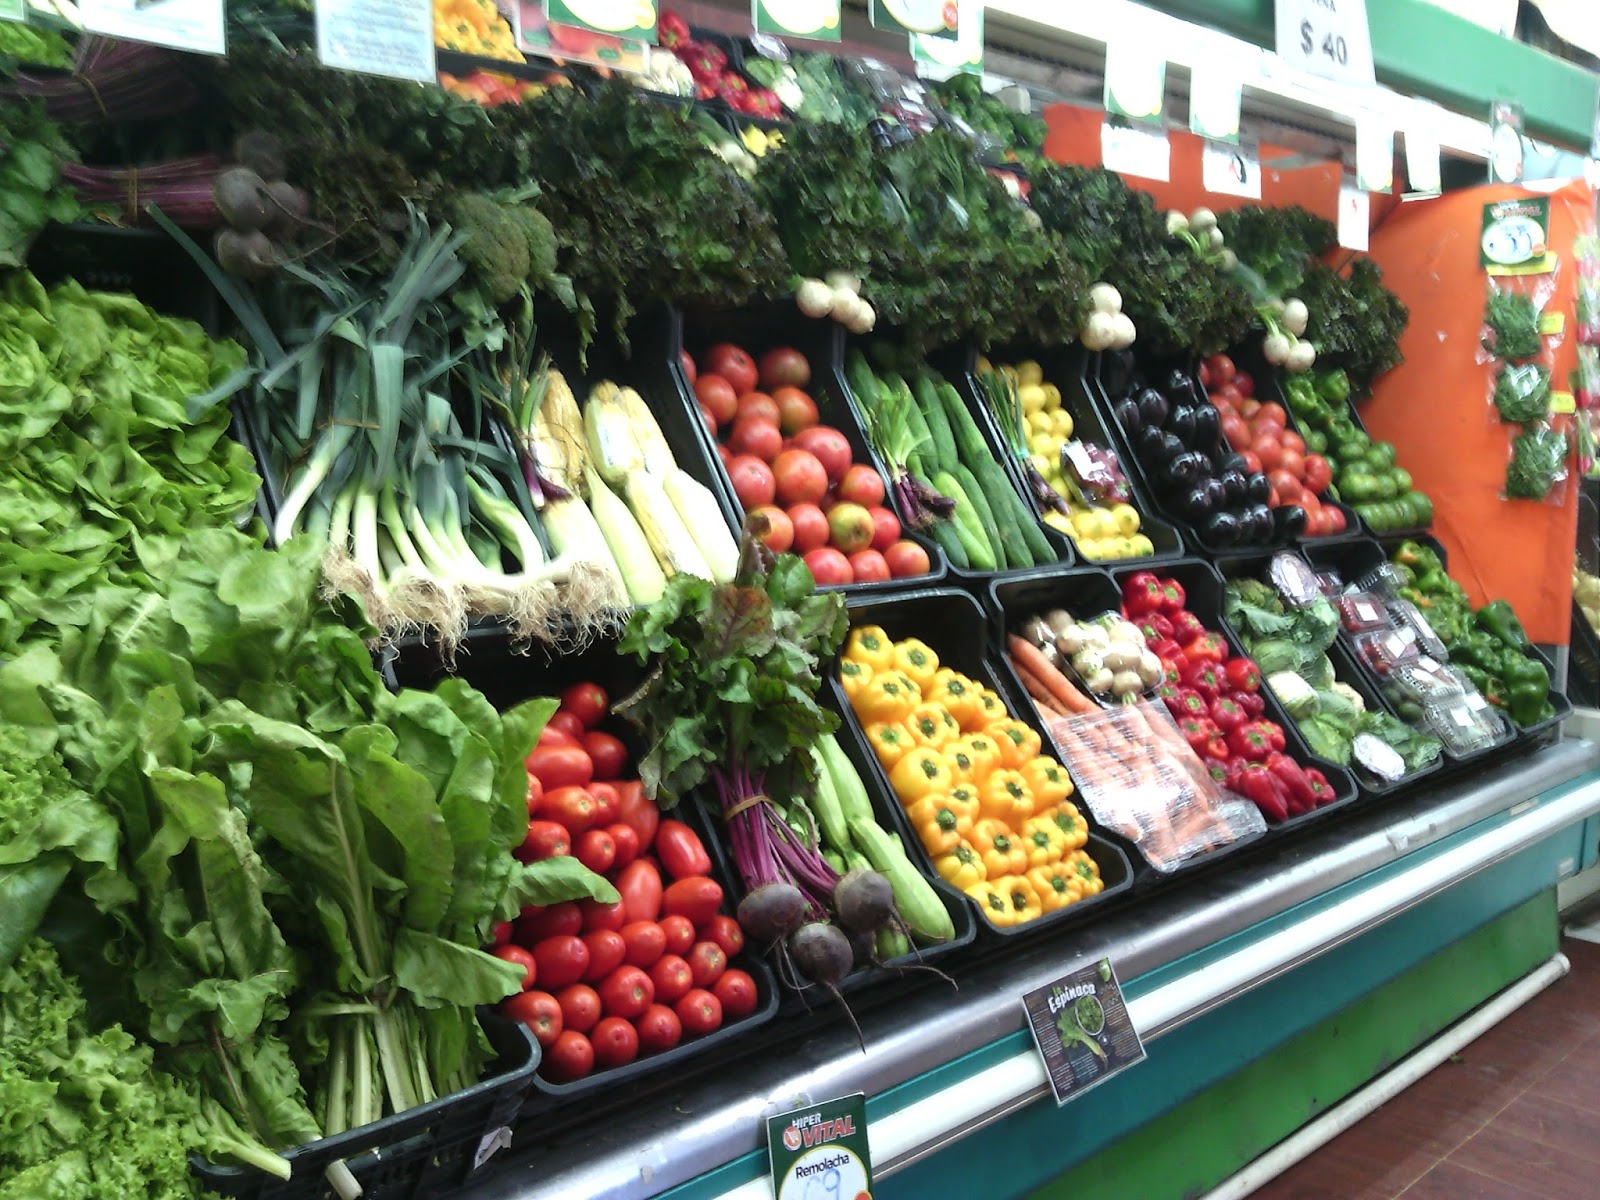 Las ventas de verduras frescas caen un 3,5% en 2019 - Revista Mercados